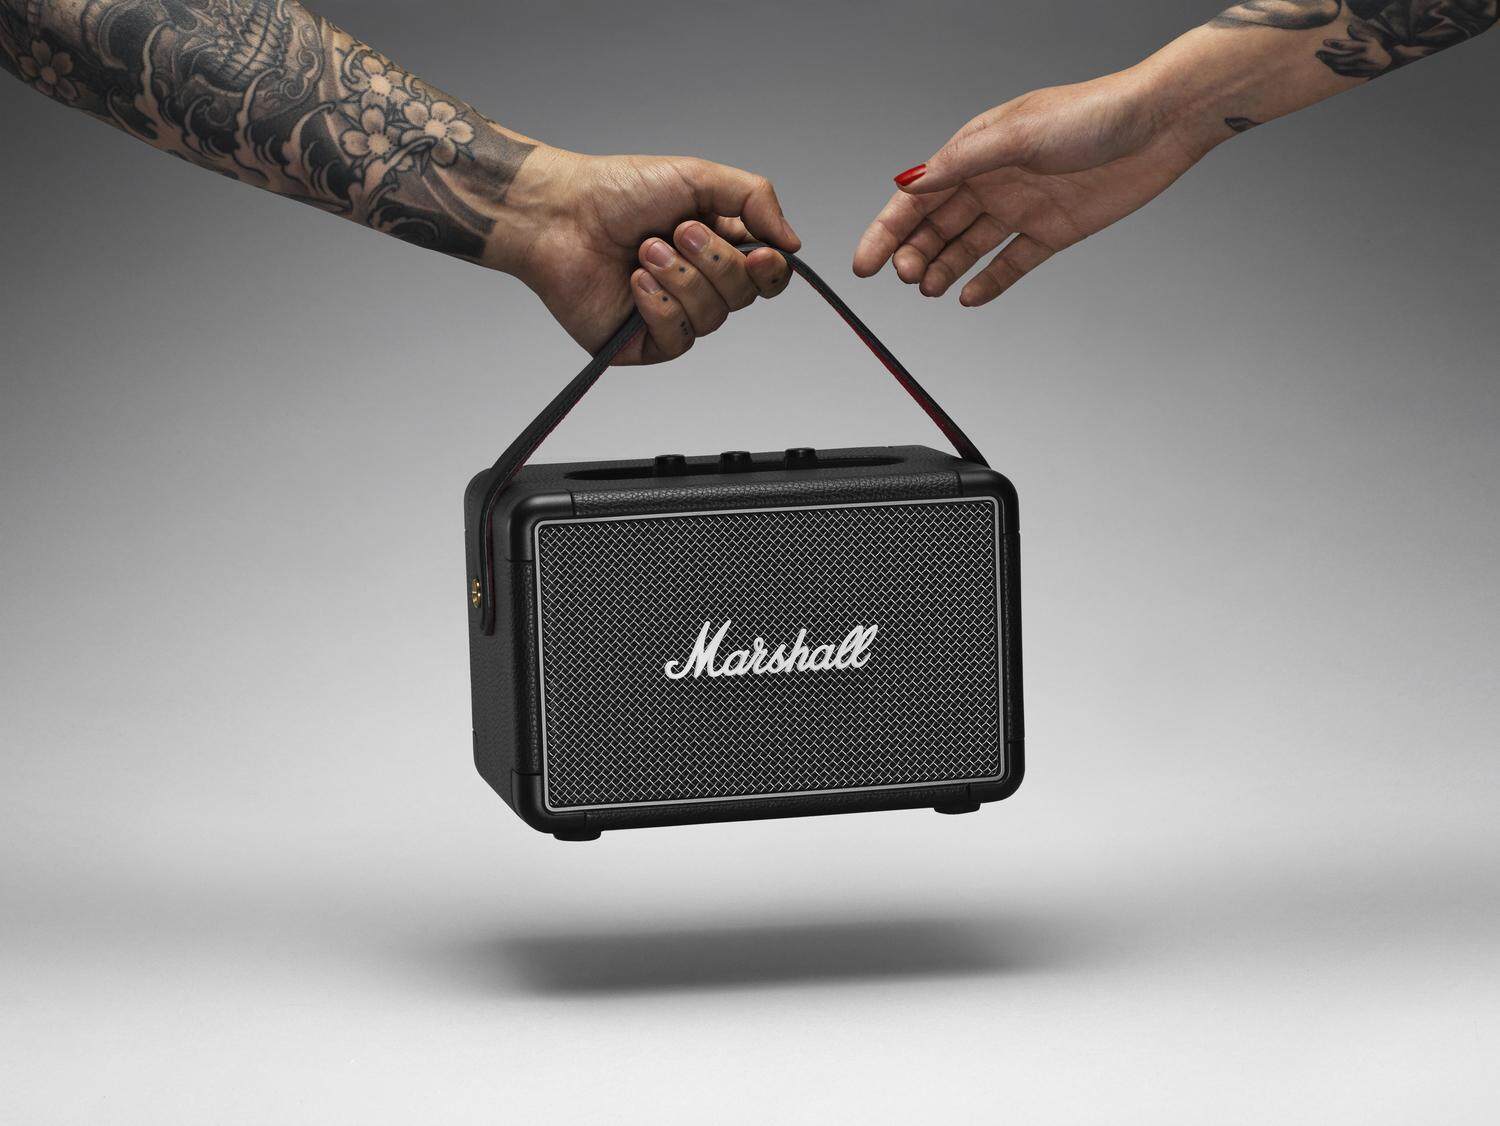 Bluetooth Speaker Kilburn Marshall II 5.0 Portable Portable